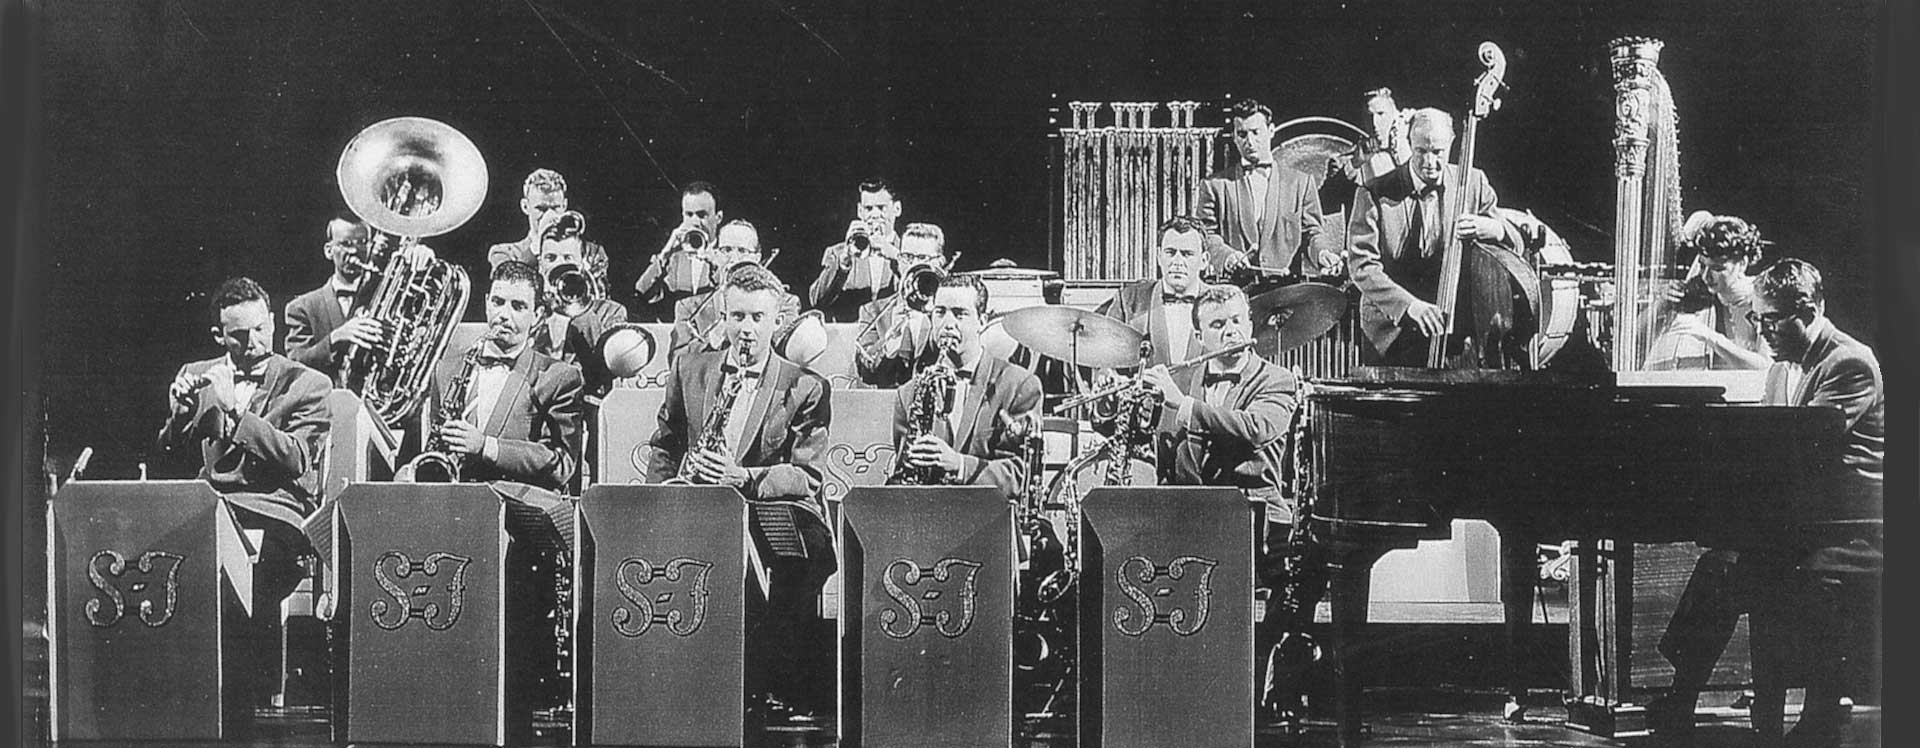 The Sauter-Finegan Orchestra circa 1955.